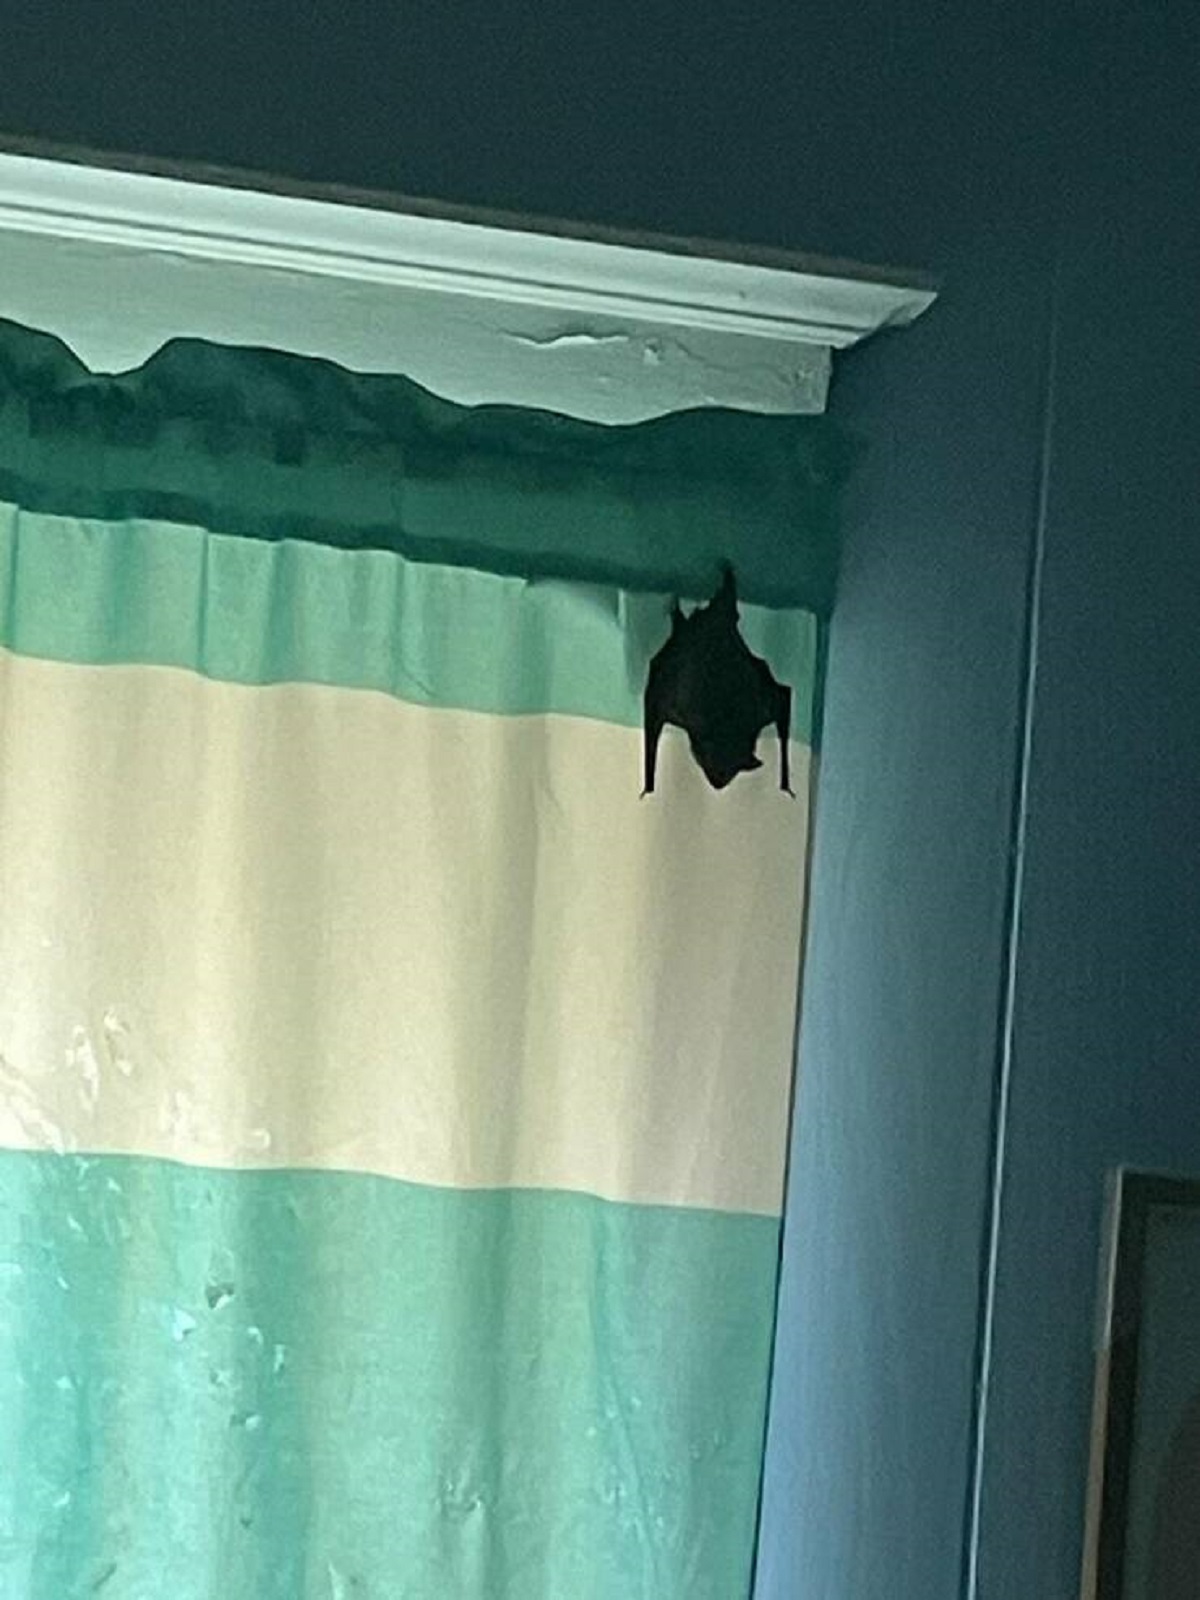 "Bat sleeping in my room"